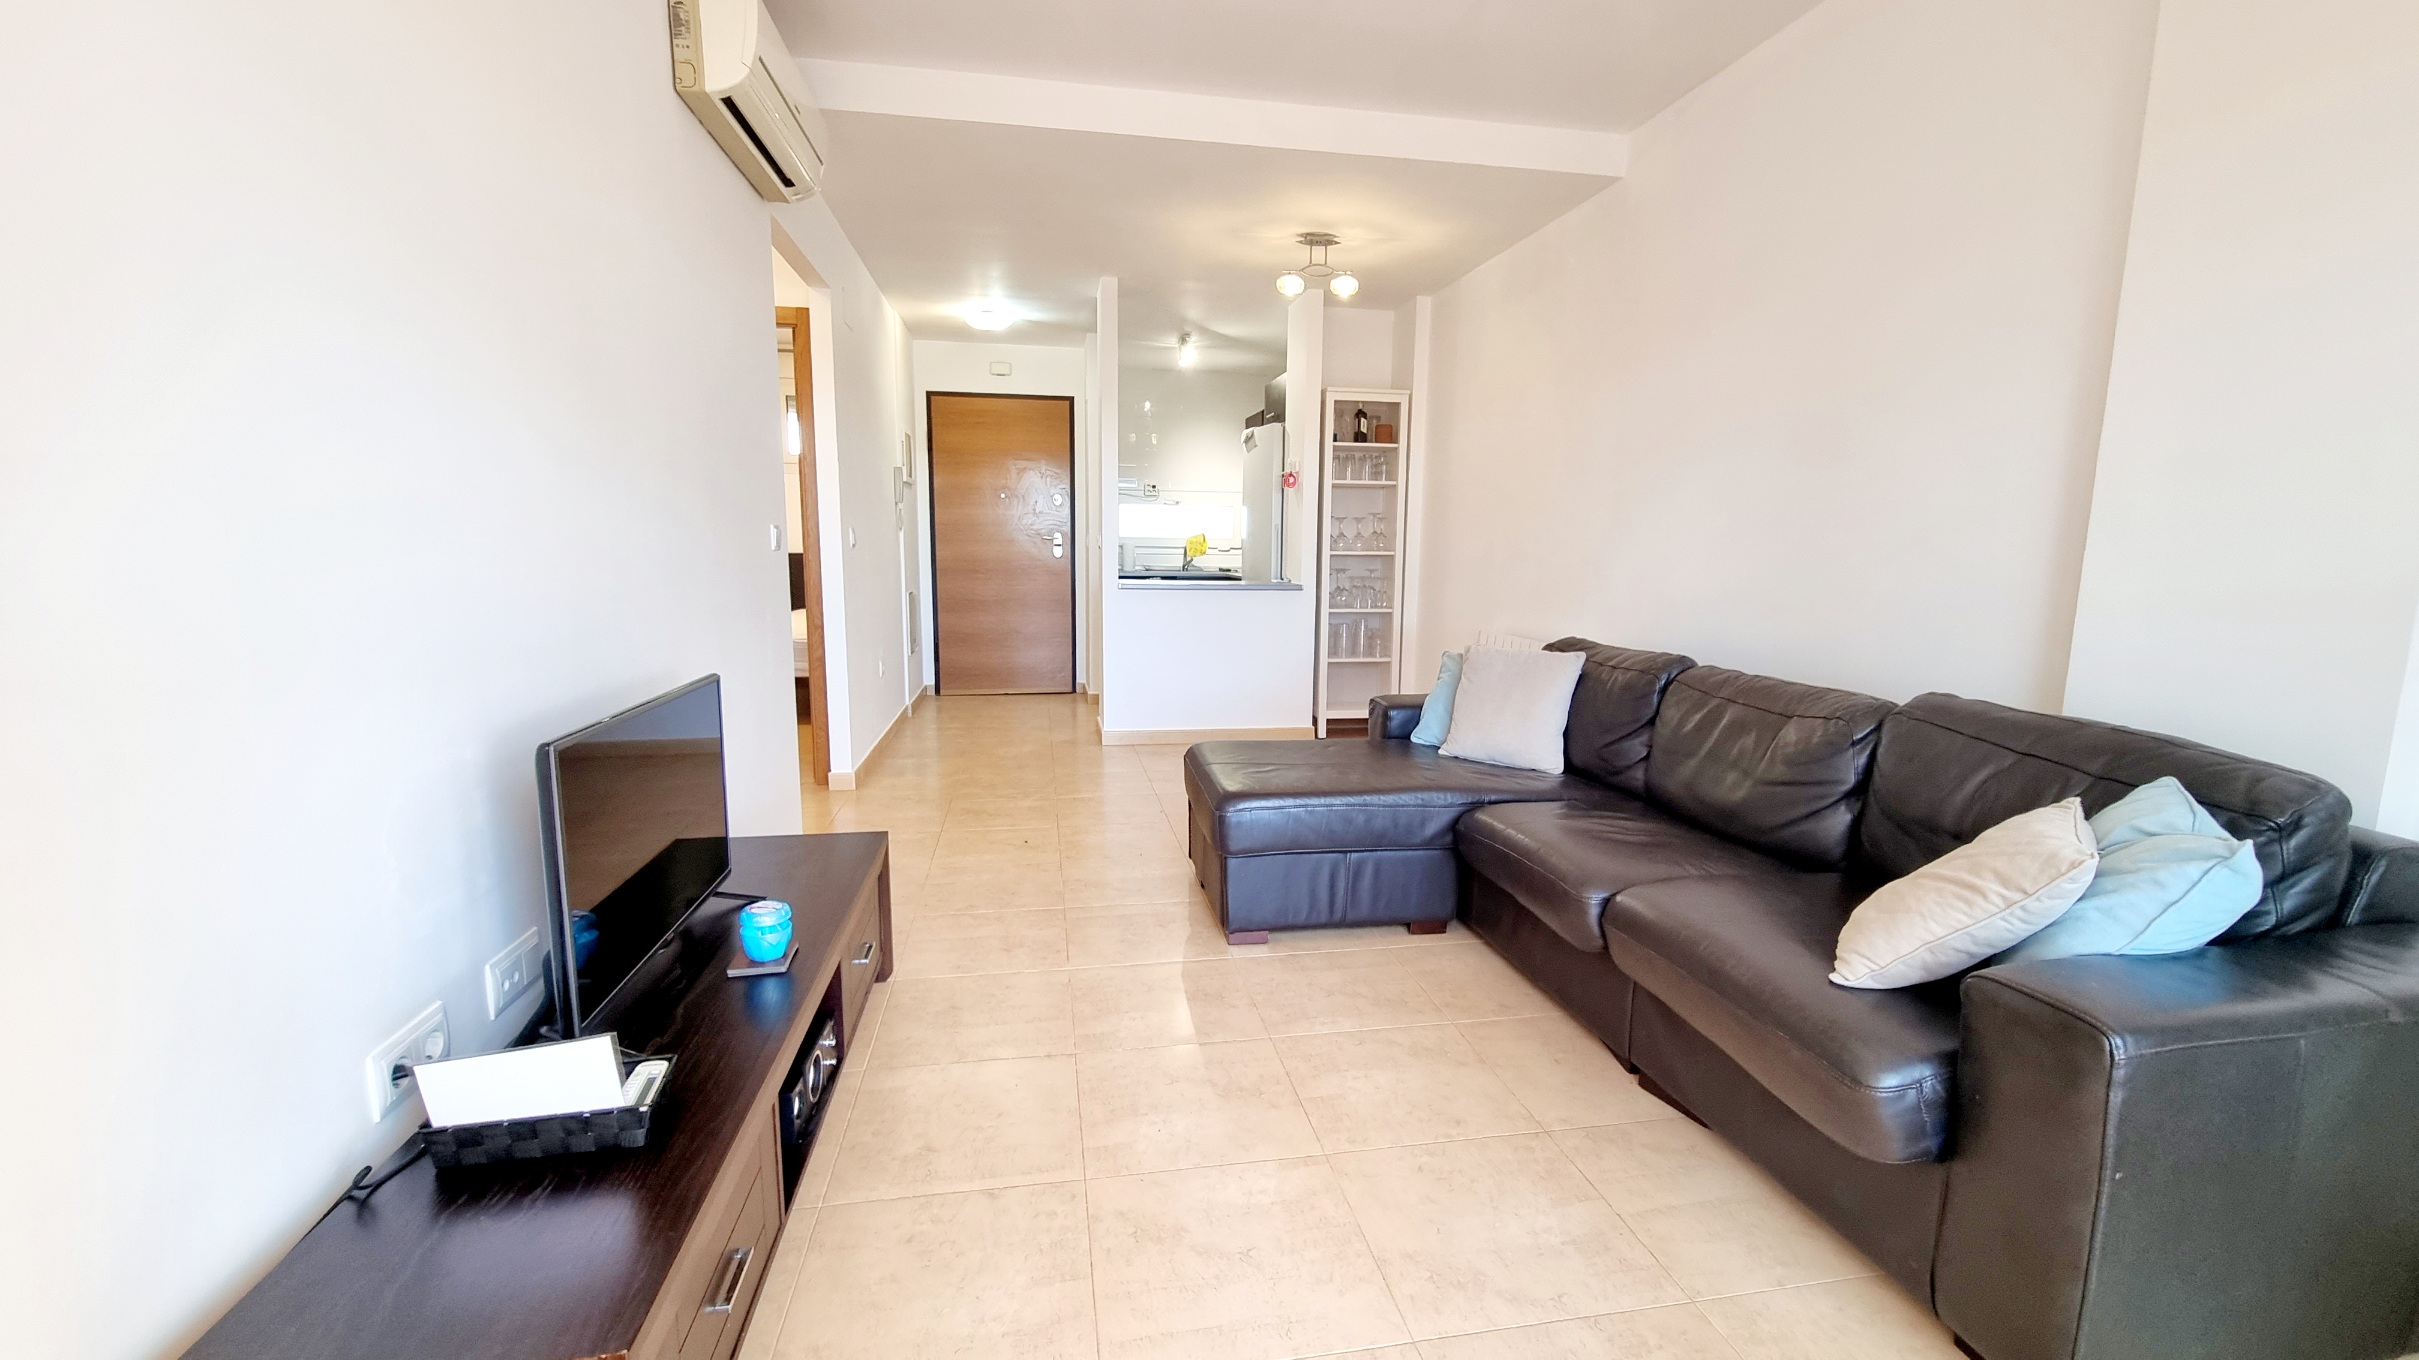 2 Bed 1 Bath Ground Floor Apartment With Garden And Golf Views – Terrazas De La Torre Golf Resort – Murcia